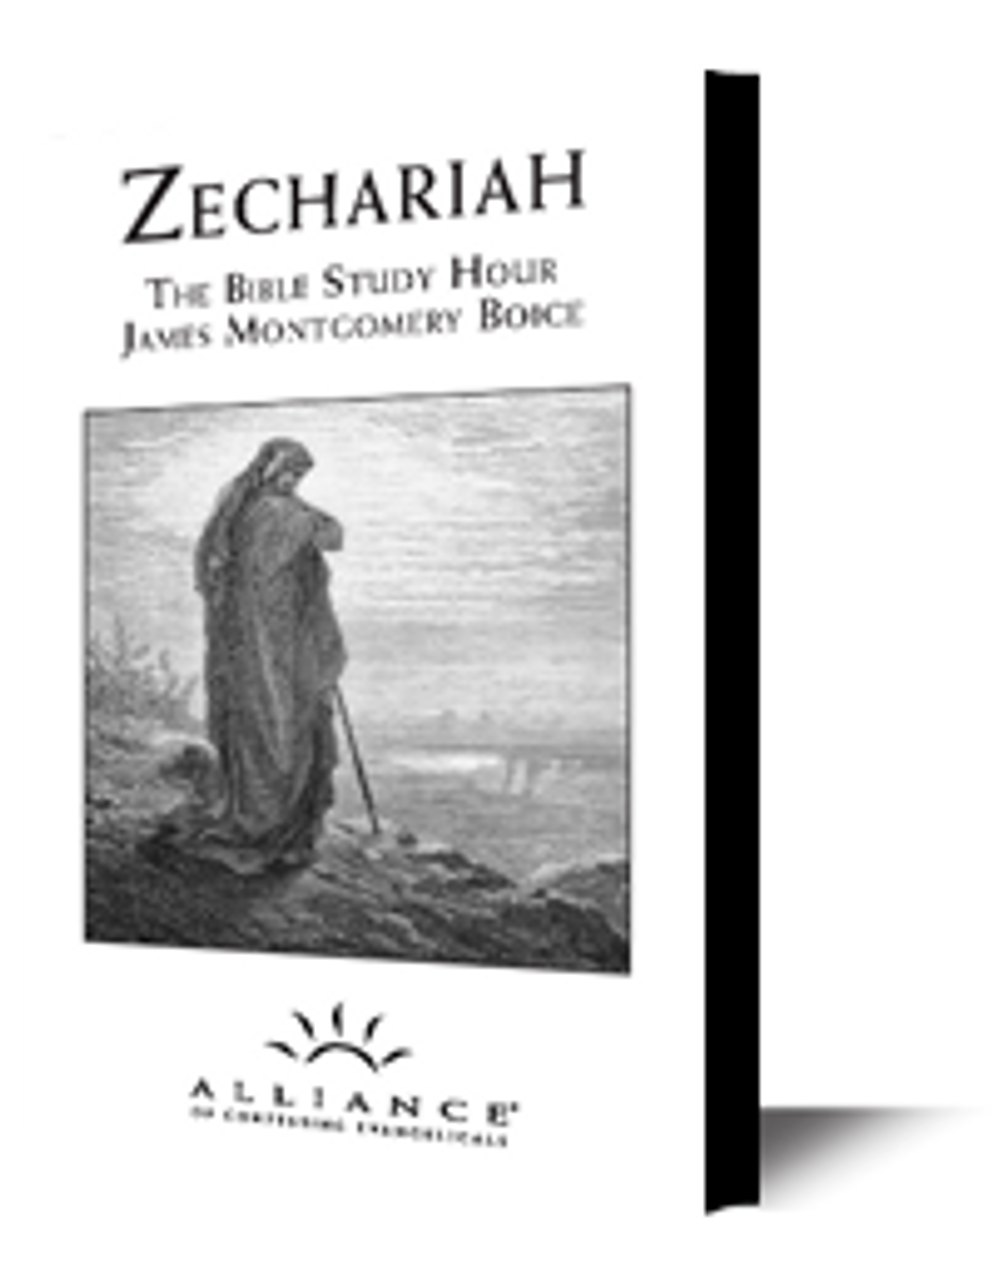 Zechariah (Boice)(mp3 downloads)